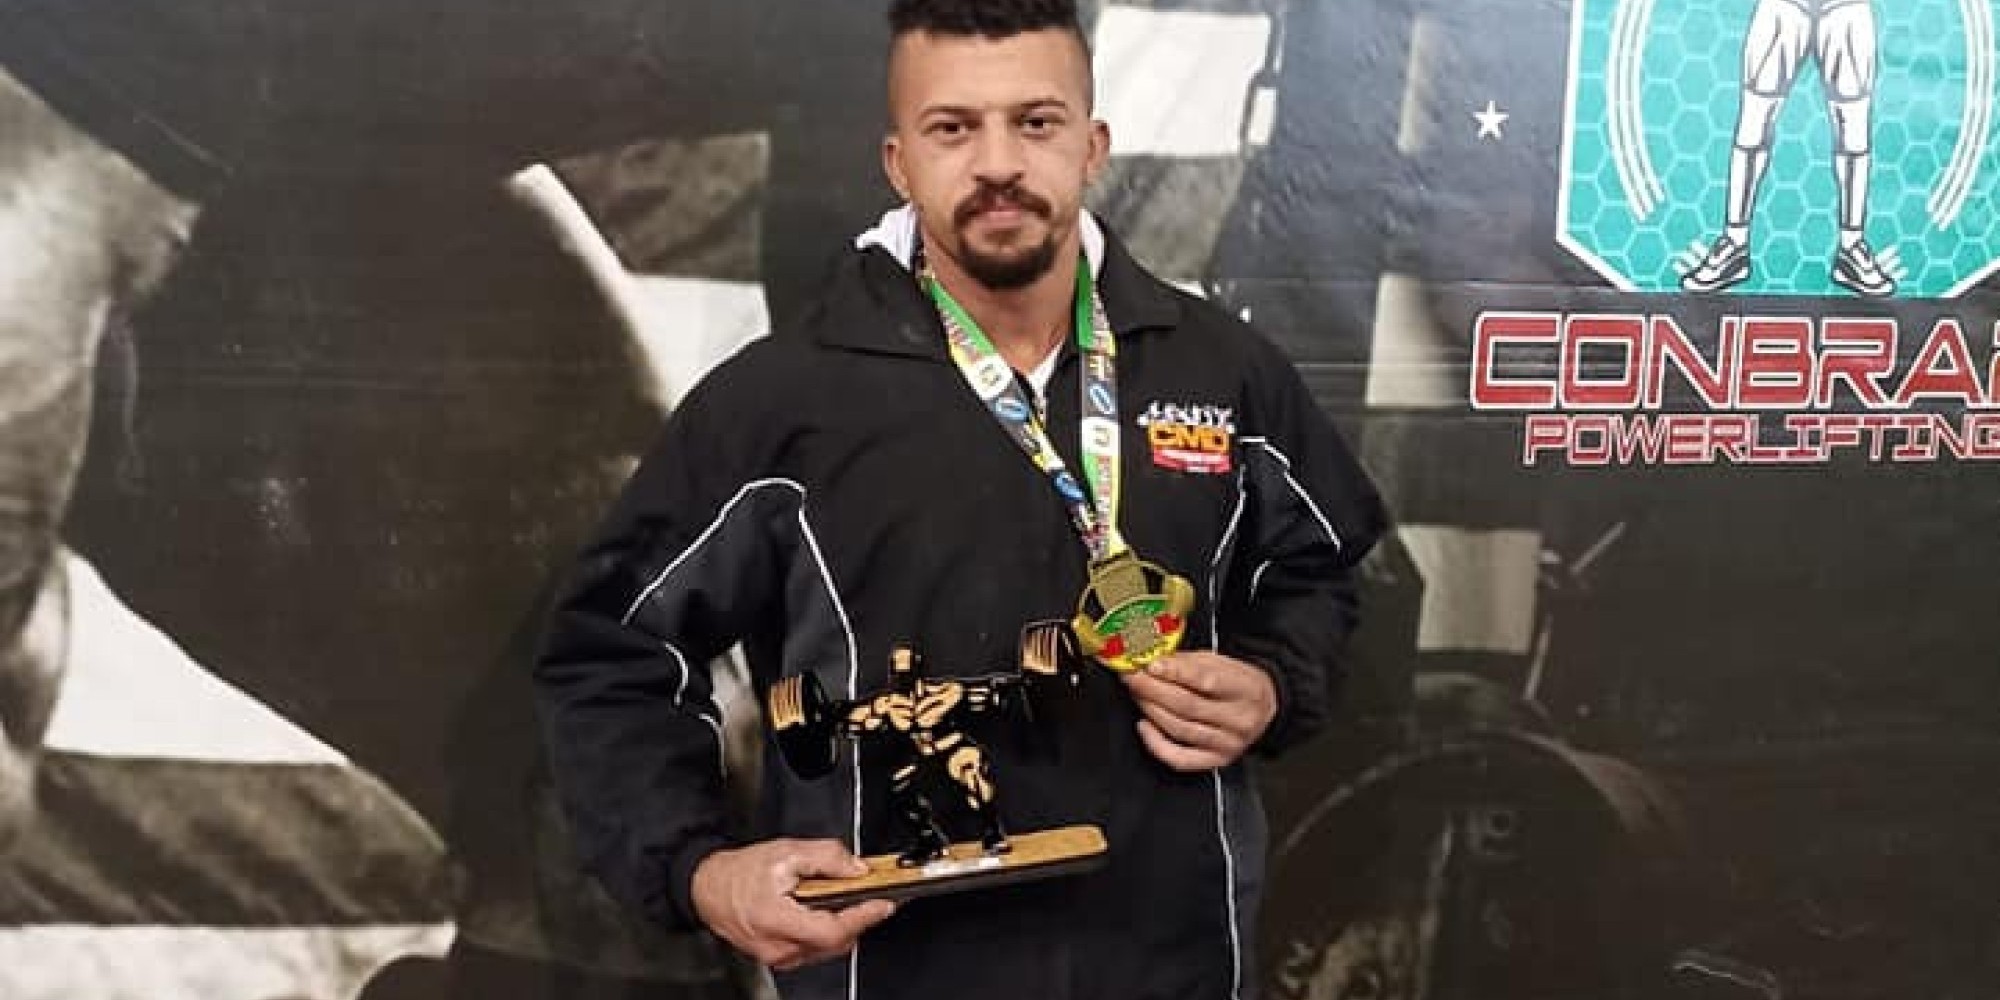 Muçunense conquista Campeonato Gaúcho de Powerlifting em Porto Alegre